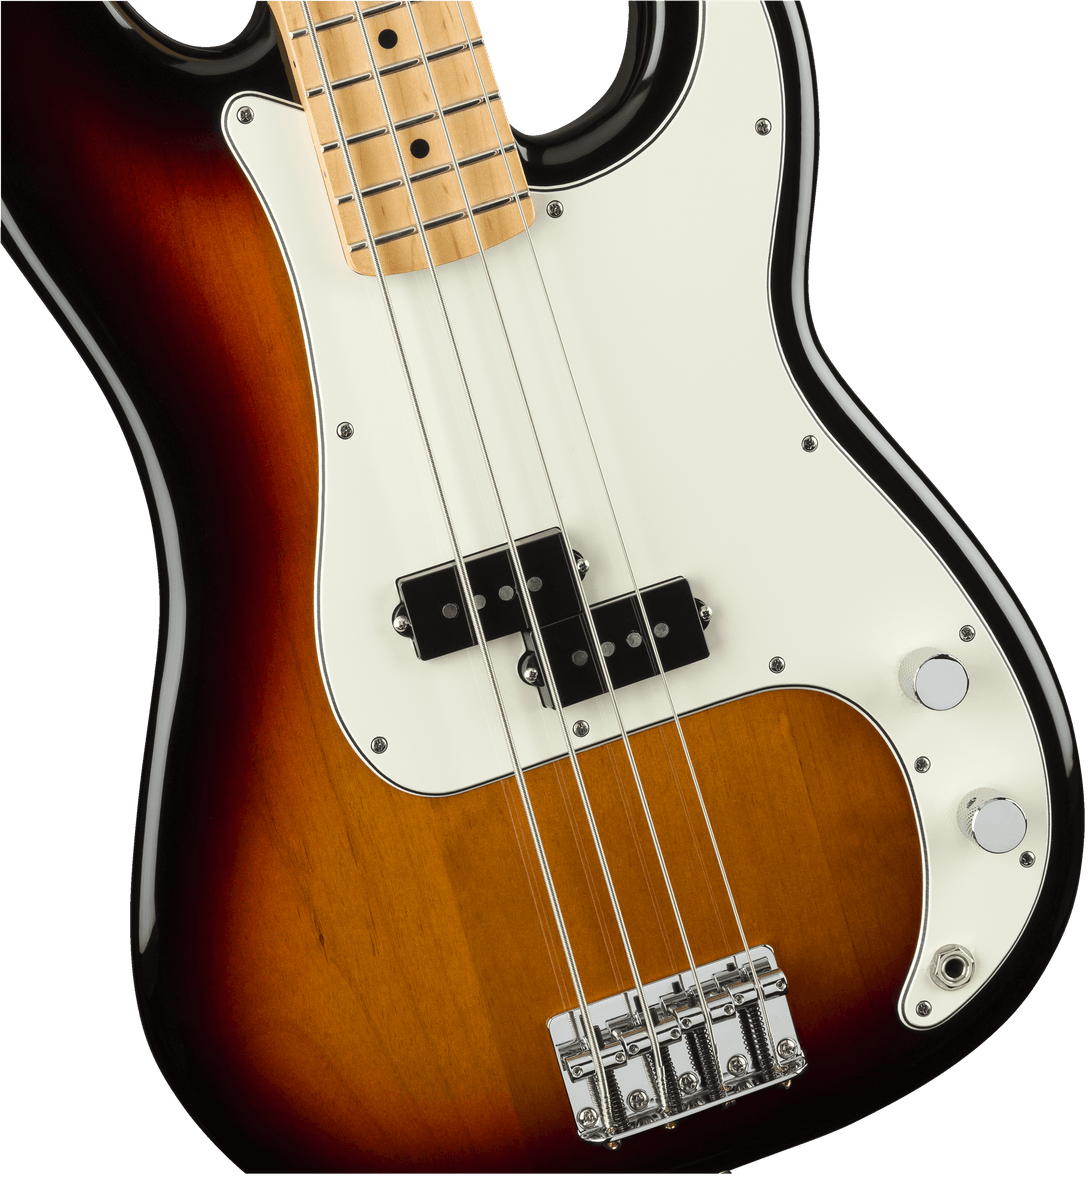 Bajo Electrico Fender Player Precision Bass®, diapasón de arce, rayos de sol de 3 colores 0149802500 - The Music Site